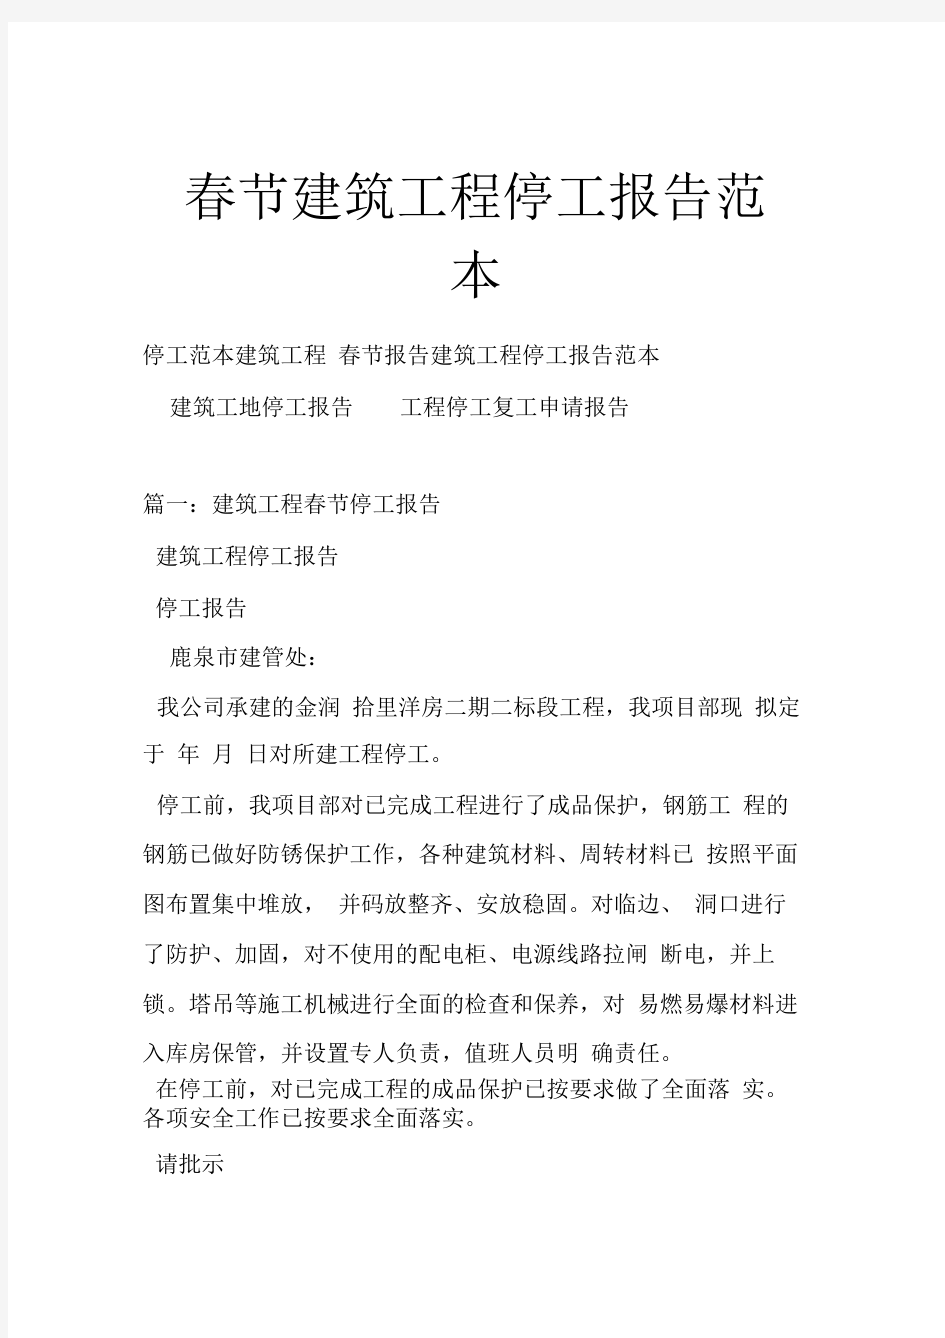 春节建筑工程停工报告范本